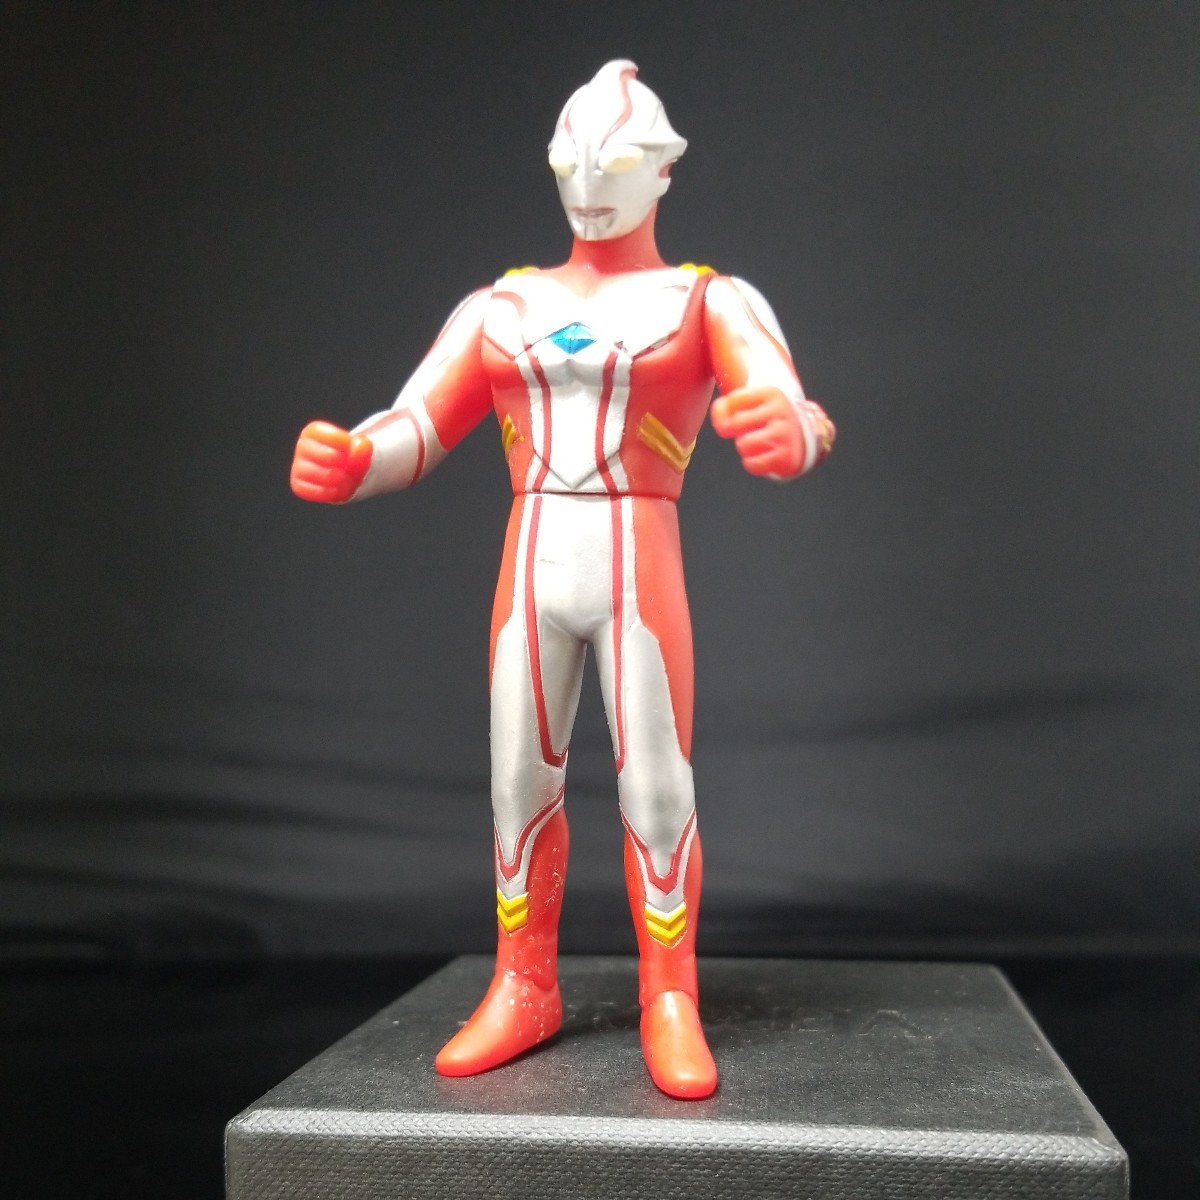  Bandai иен . Pro подлинная вещь Ultraman Tiga Mebius Dyna Gaya 4 вида комплект изображение . полностью перед ставкой. обязательно описание товара . прочитайте пожалуйста 